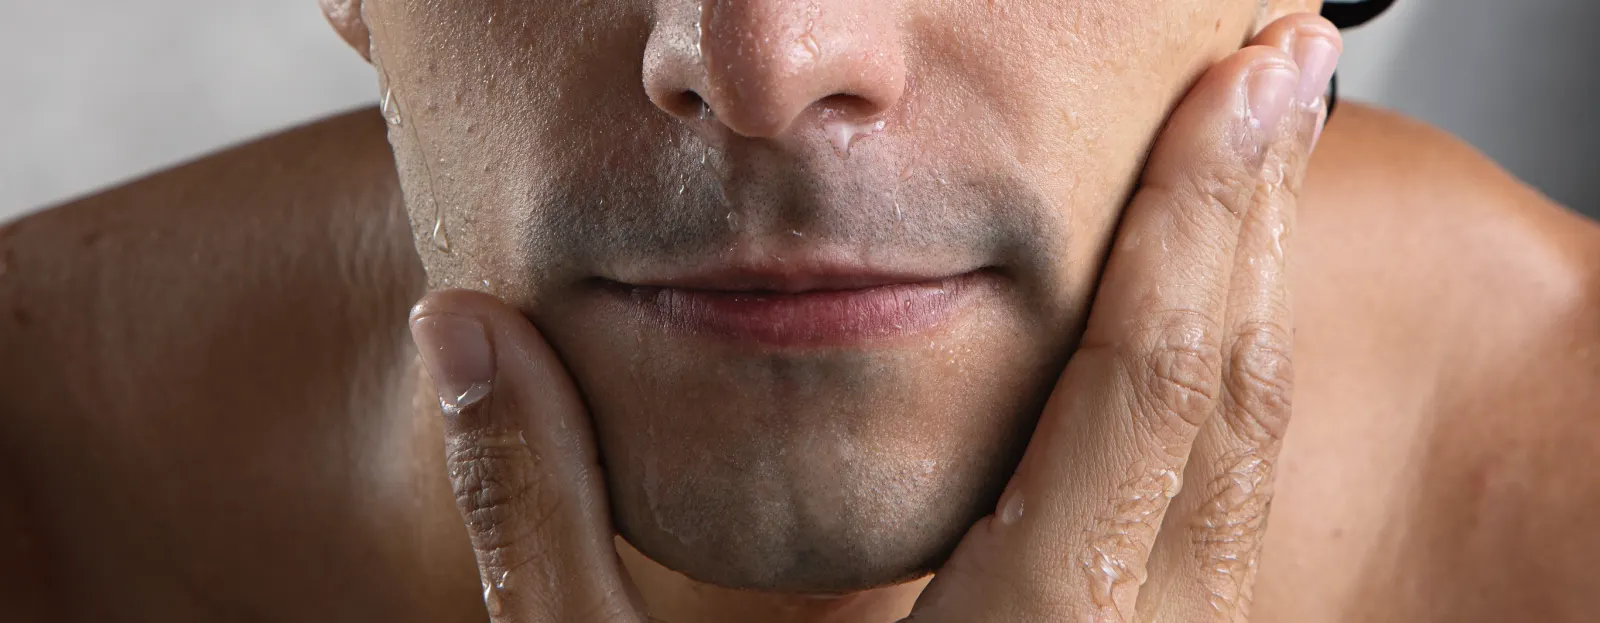 Consejos para afeitarse: comience con una cáscara